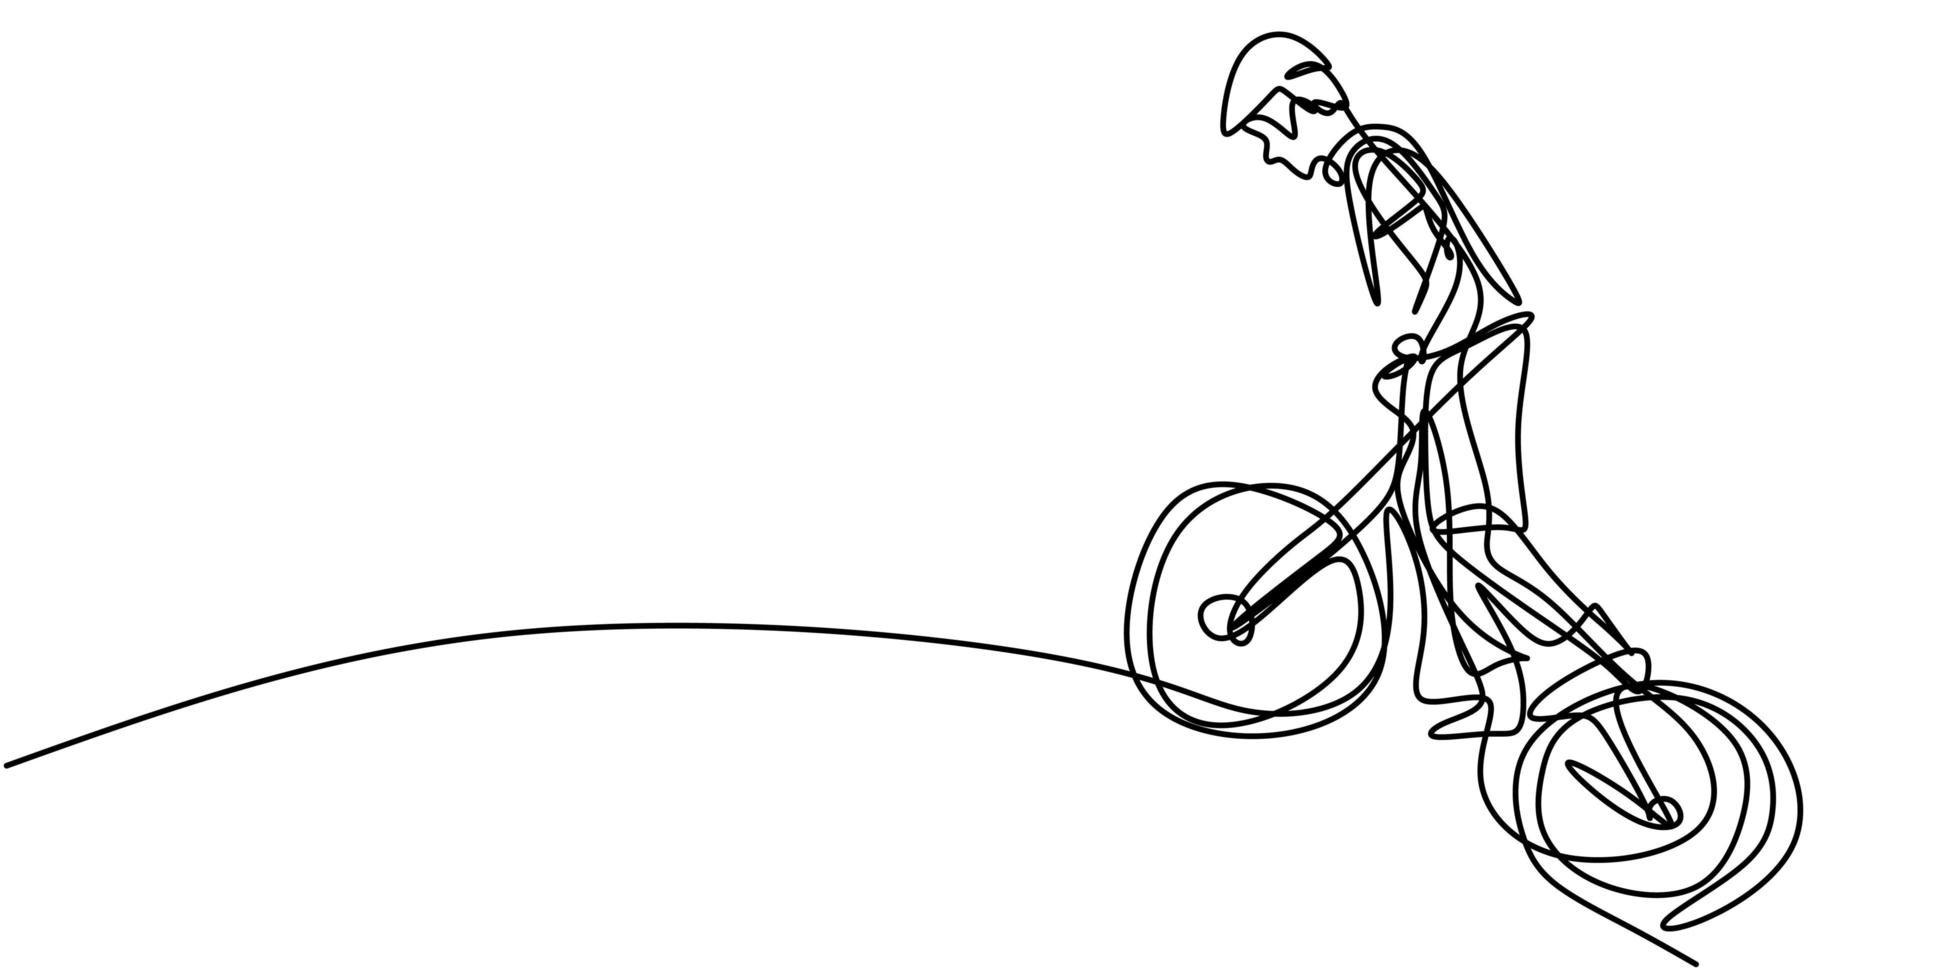 kontinuerlig en rad ung cyklist man i en hjälm utför ett trick på cykel. vektor